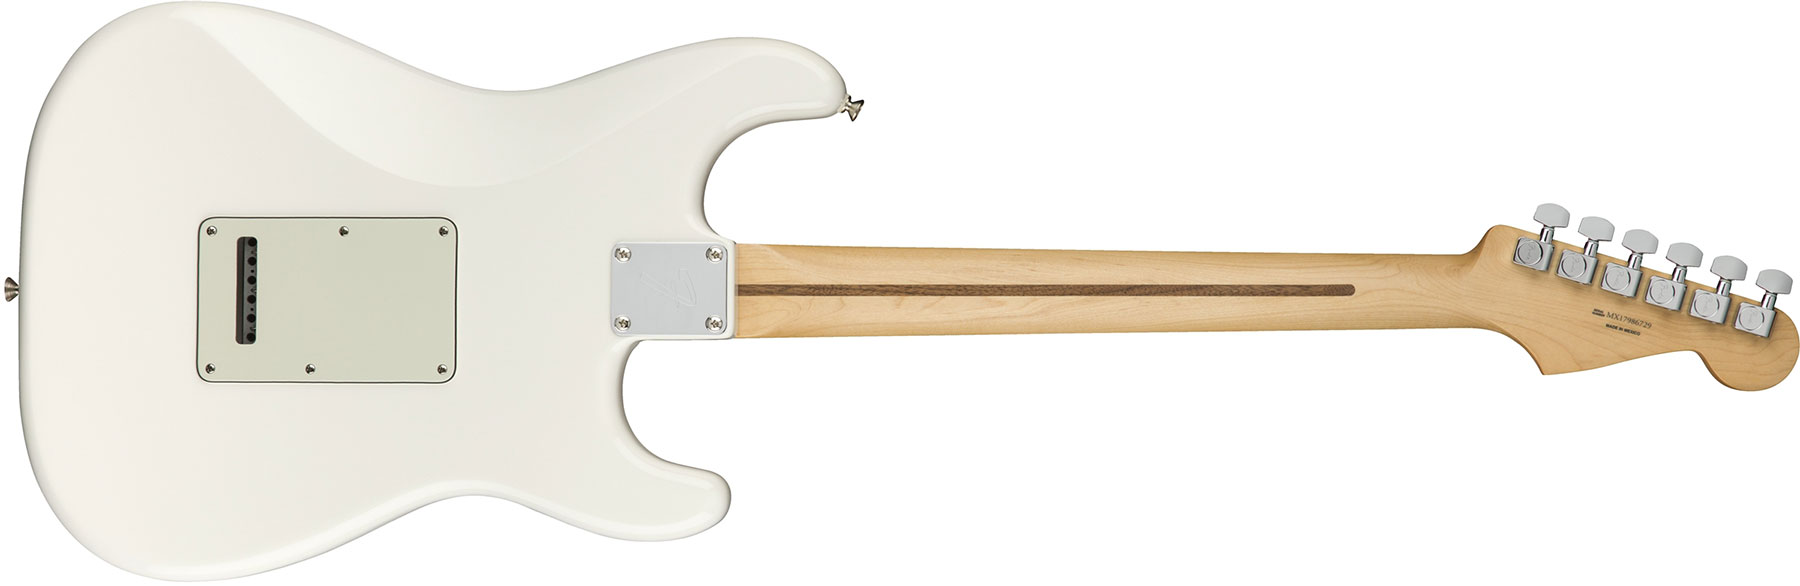 Fender Strat Player Lh Gaucher Mex Sss Mn - Polar White - Linkshandige elektrische gitaar - Variation 1